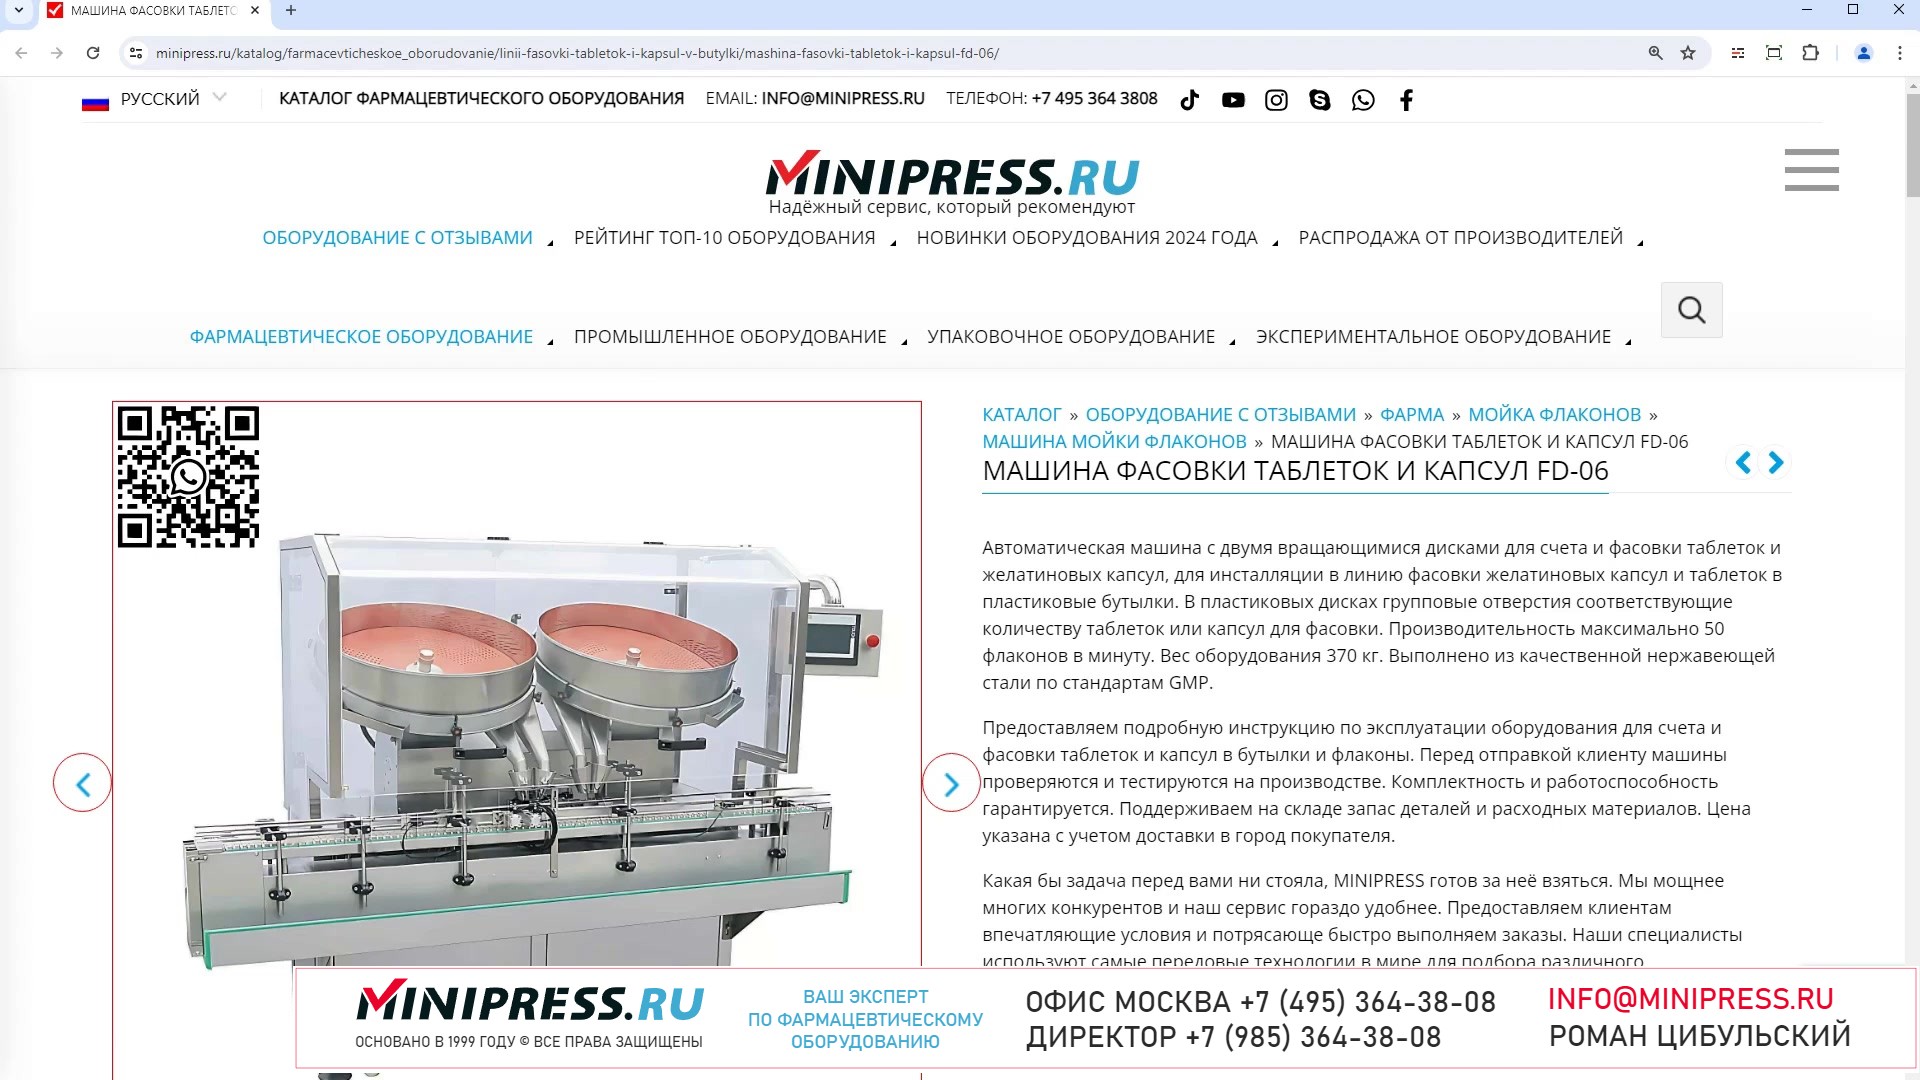 Minipress.ru Машина фасовки таблеток и капсул FD-06